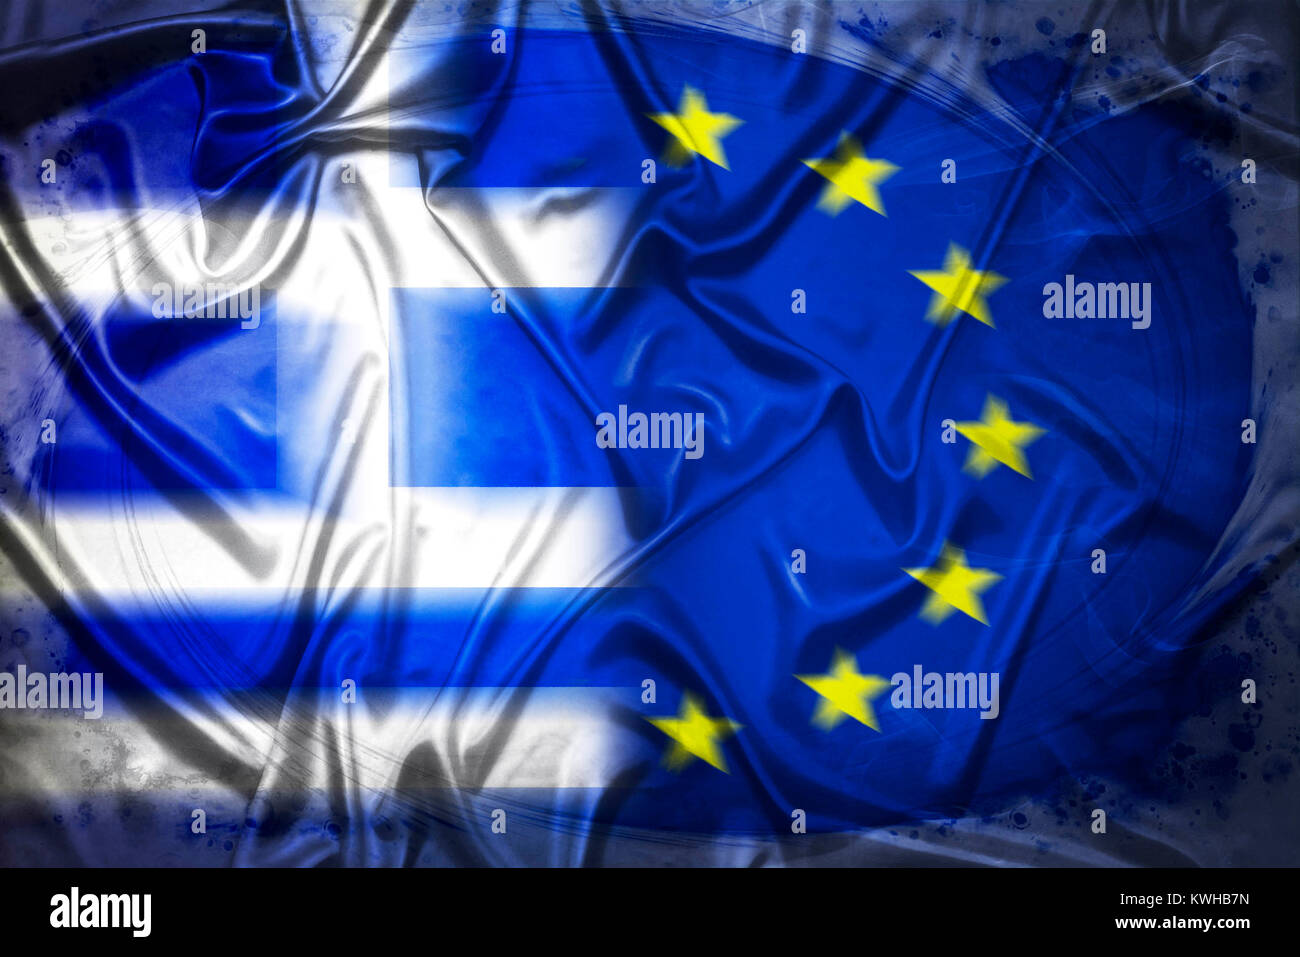 La Grecia e la bandiera dell'UE, simbolico Grexit foto, Griechenland- und UE-Fahne, Symbolfoto Grexit Foto Stock